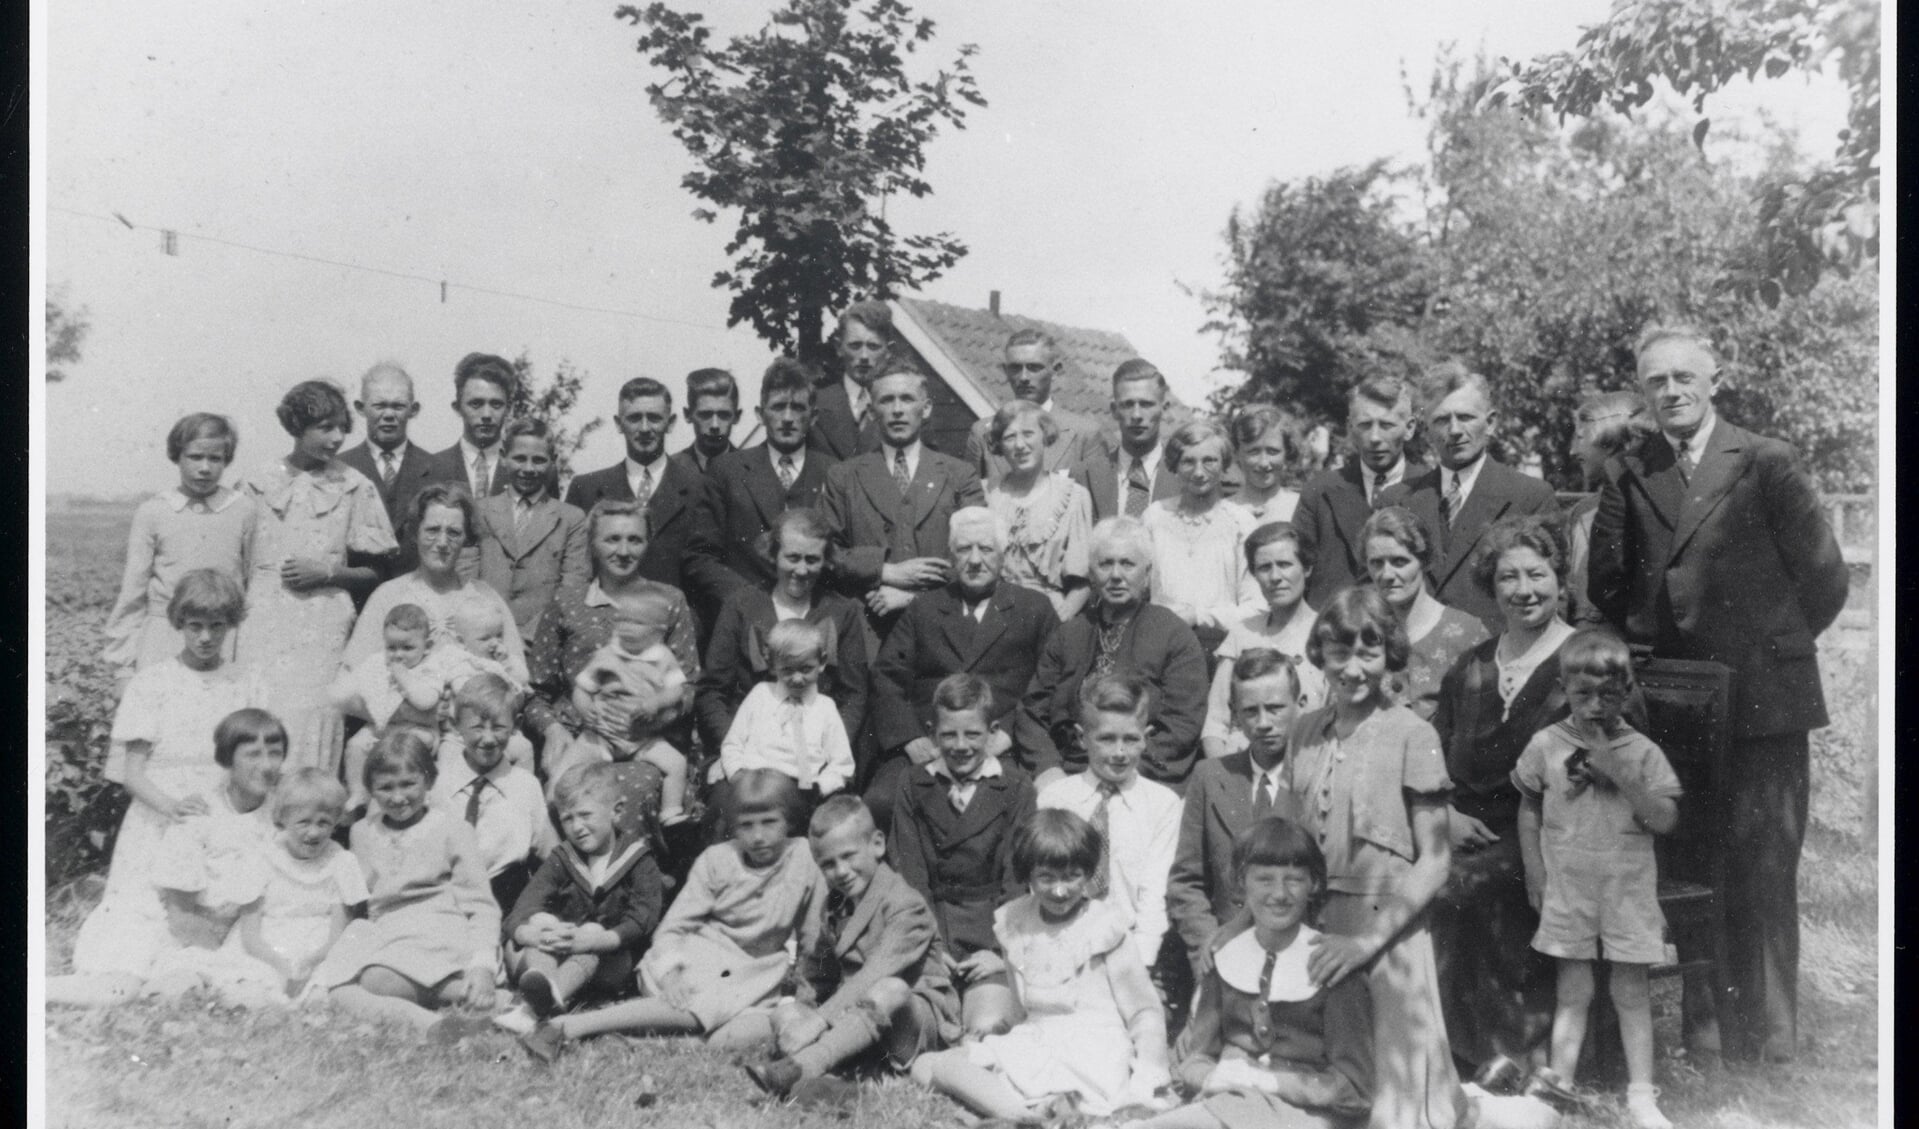 De familie Mak uit Wormer, met opa Jan Mak en opoe Marijtje Romein in het midden, 1936